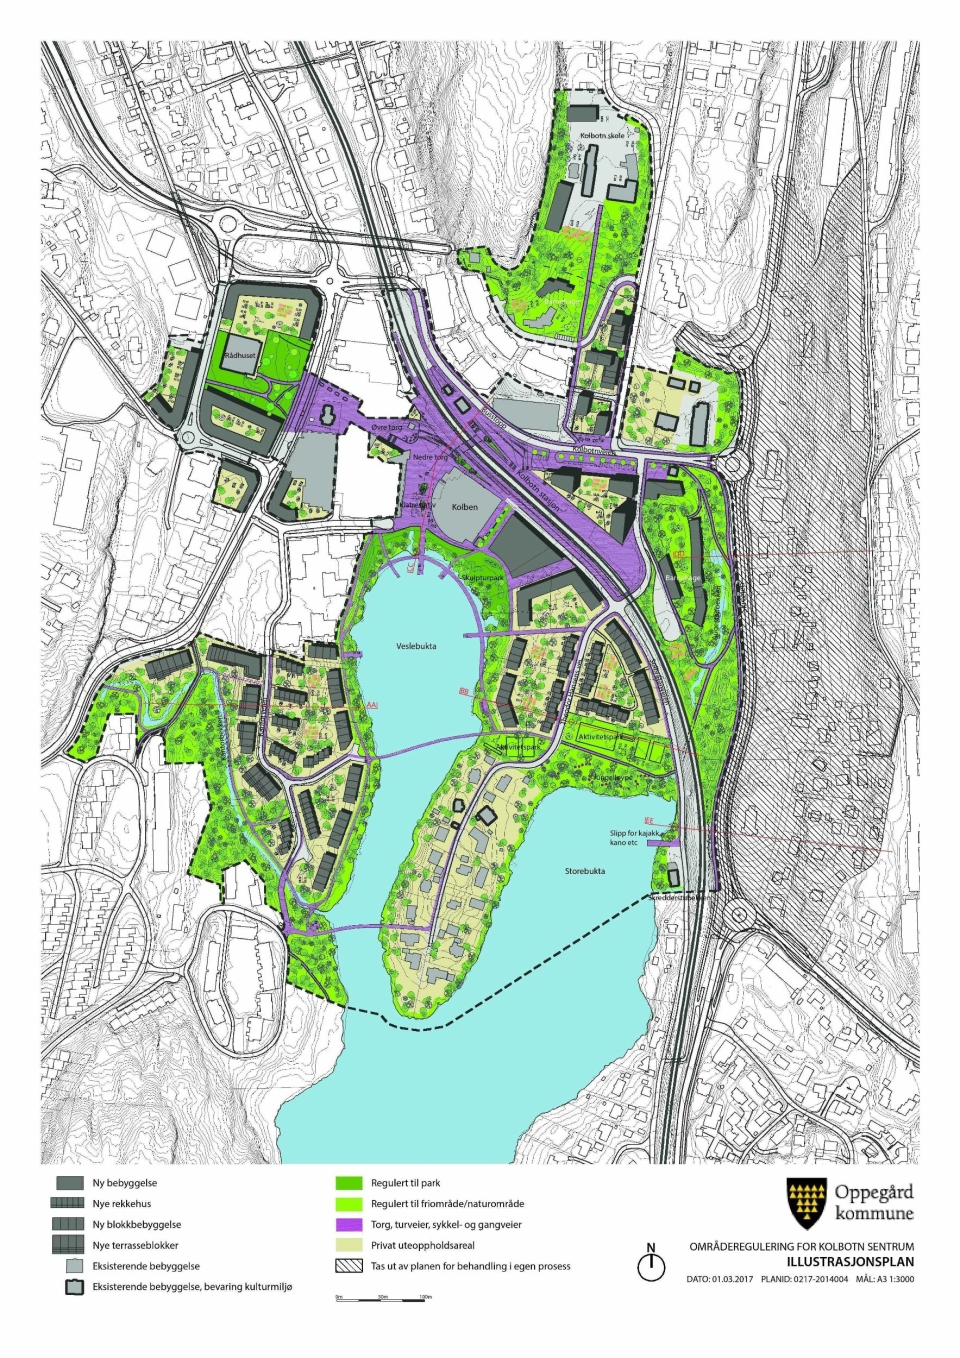 TO BROER: Illustrasjonsplanen for områdereguleringen for Kolbotn sentrum fra 1. mars 2017.